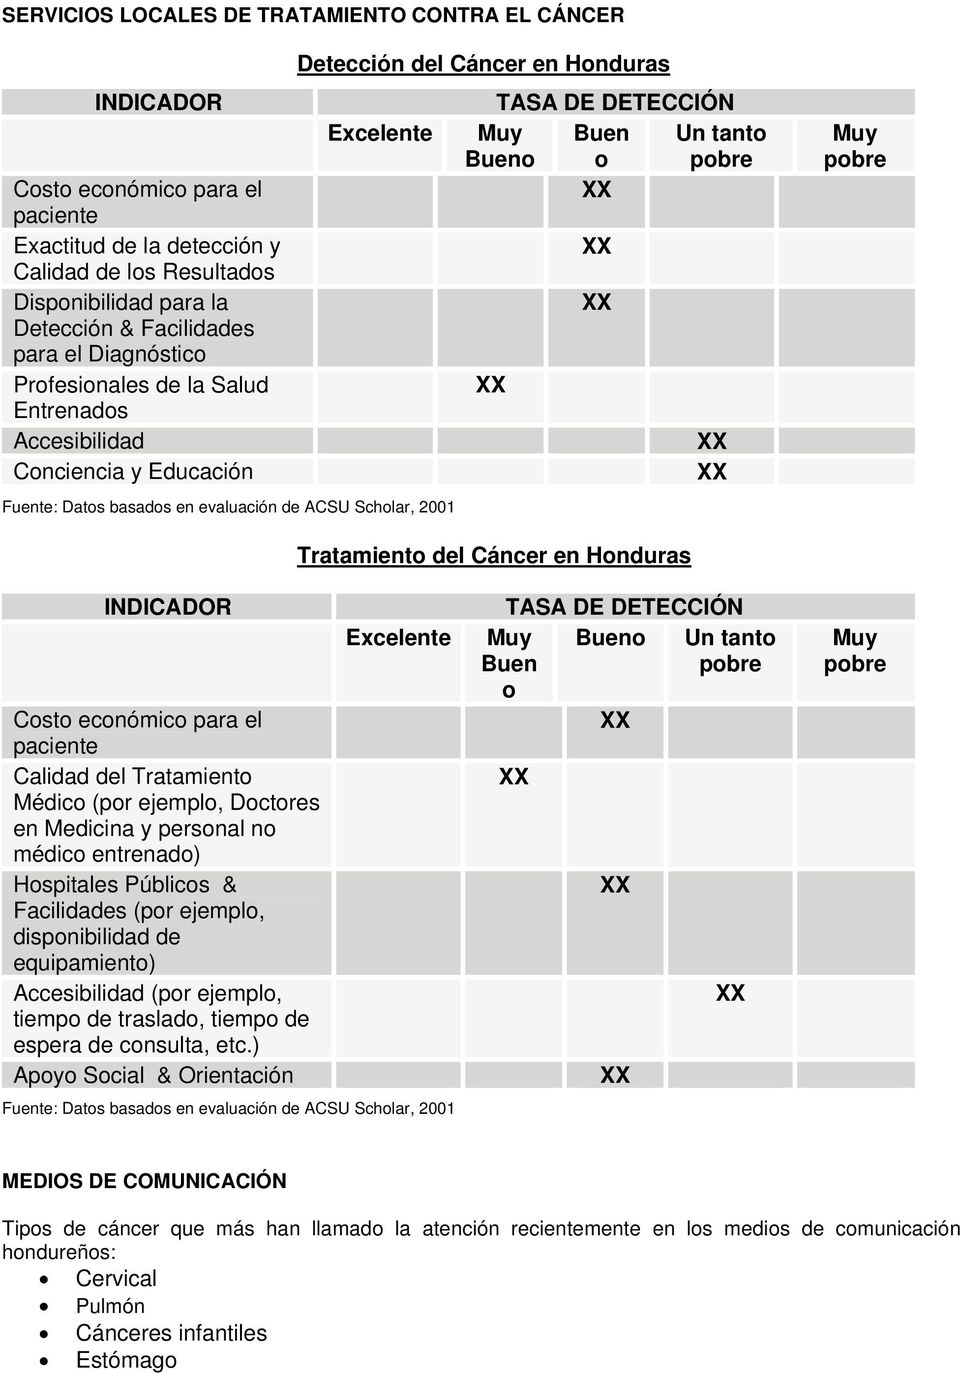 DETECCIÓN Buen o Bueno Un tanto Tratamiento del Cáncer en Honduras INDICADOR Costo económico para el paciente Calidad del Tratamiento Médico (por ejemplo, Doctores en Medicina y personal no médico